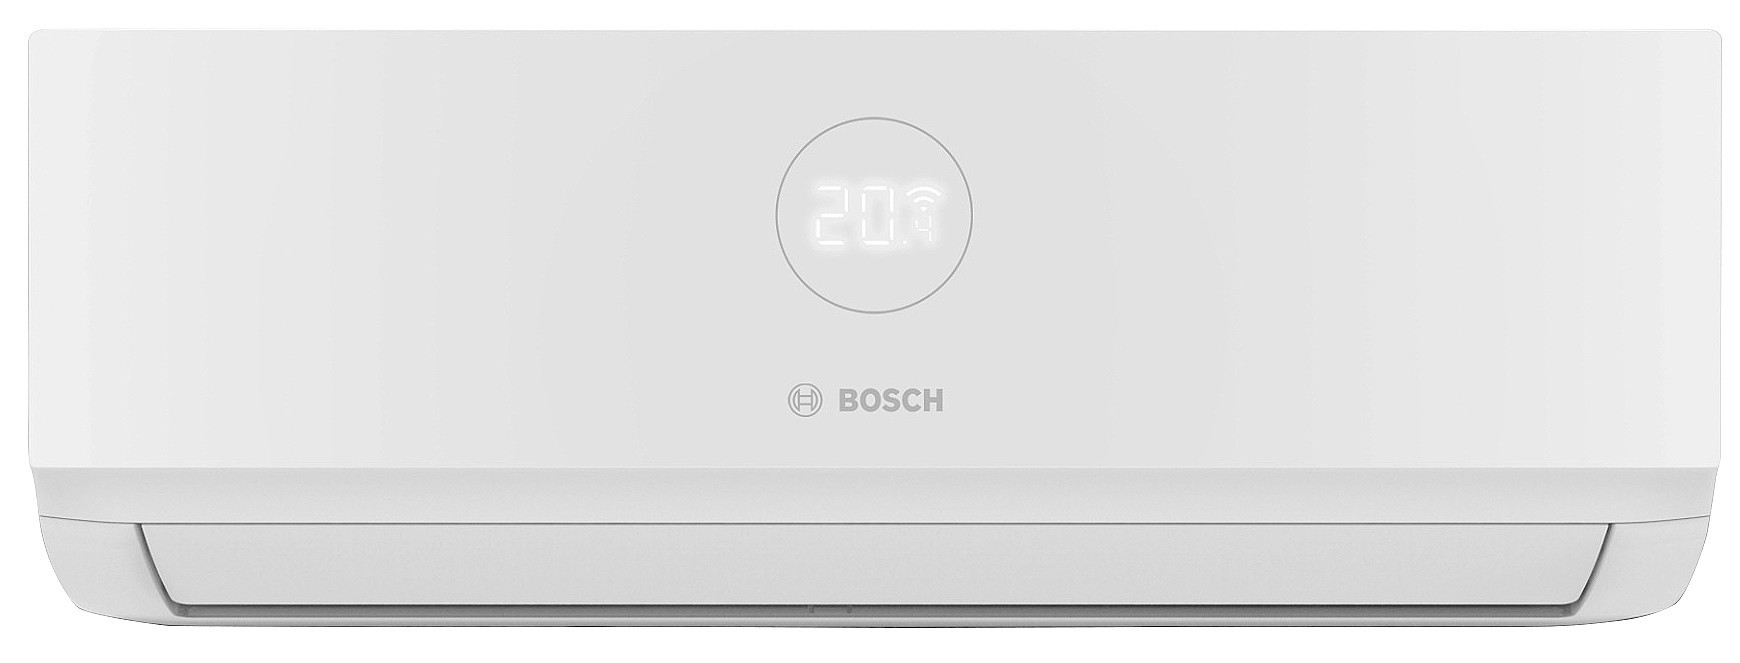 Bosch CL3000iU W 70 E, 7,0 кВт